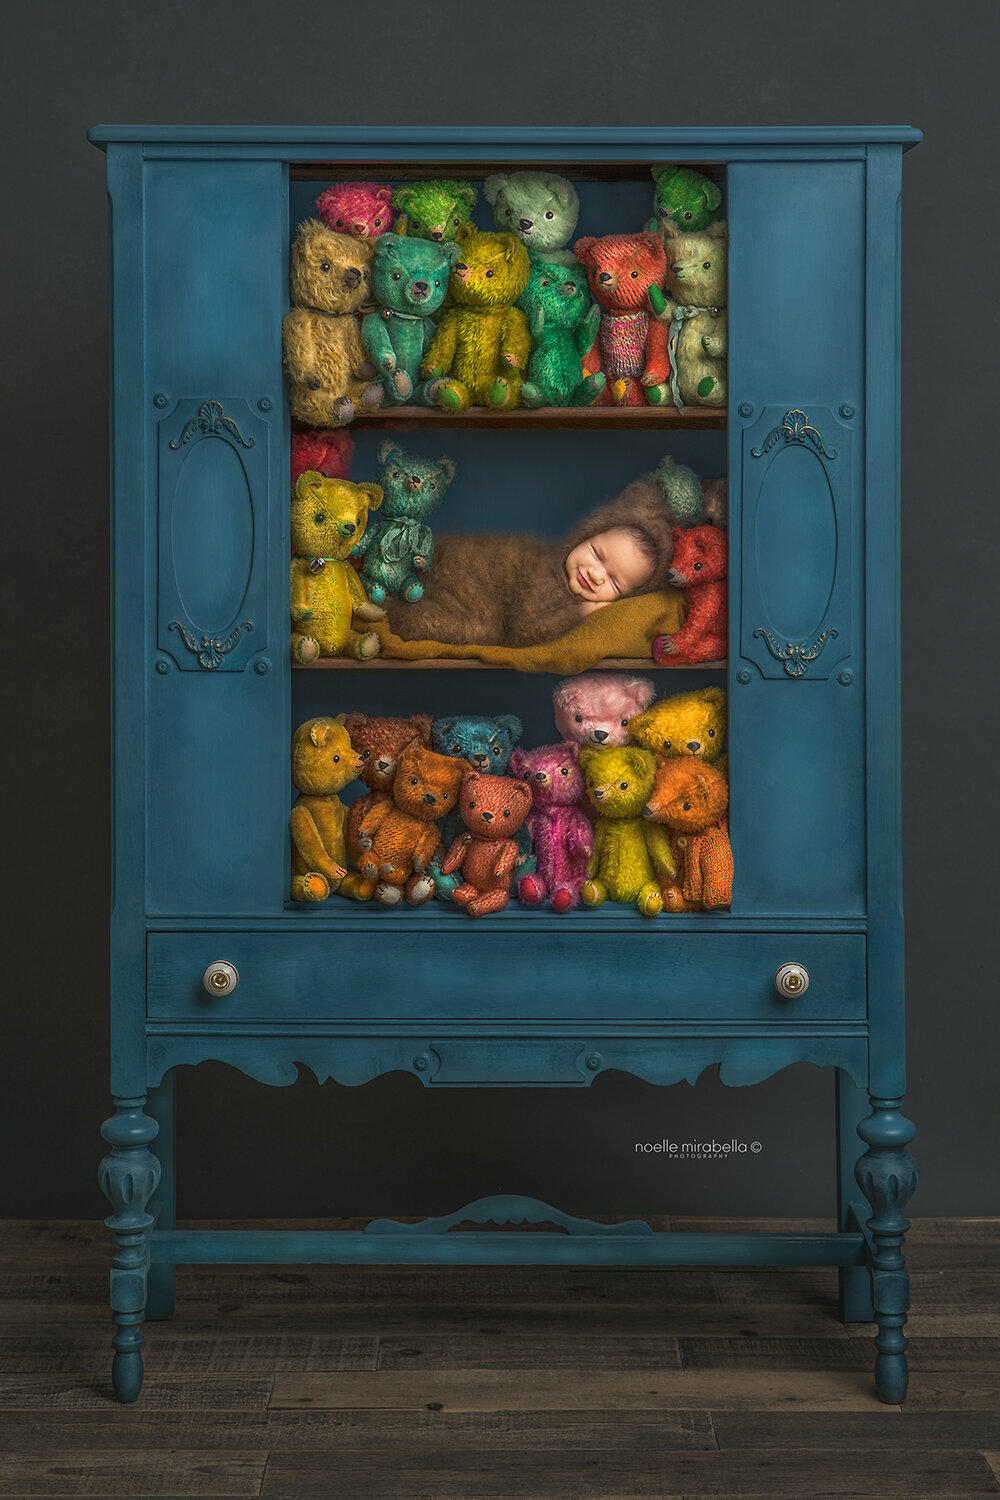 Newborn dressed as a teddy bear snoozing in a blue cupboard full of teddy bears.